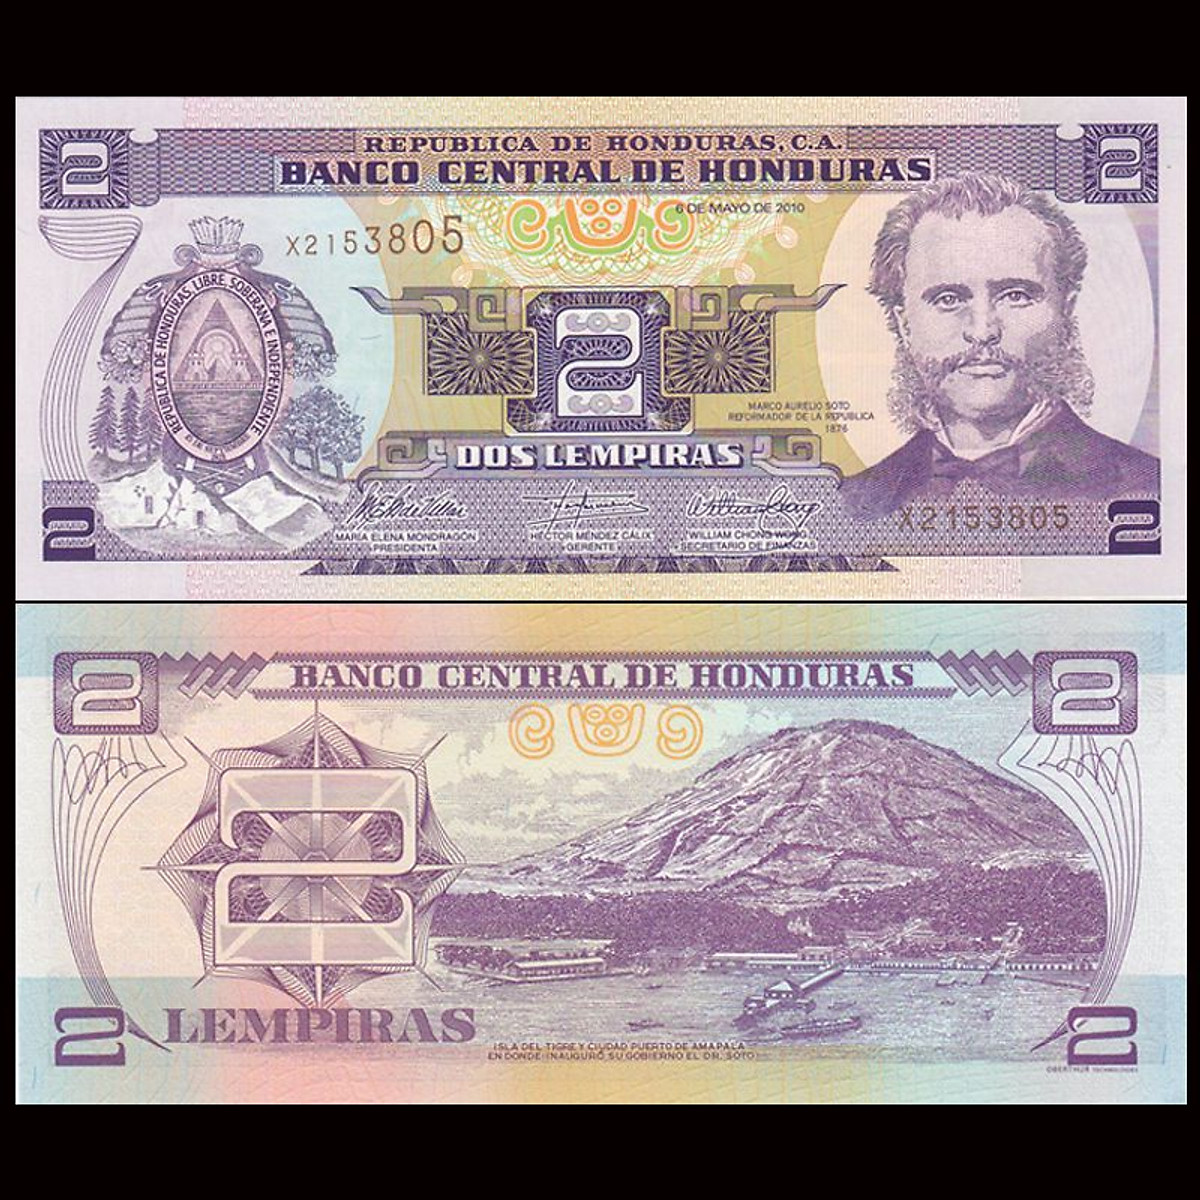 Tiền thế giới 2 lempiras Cộng hòa Honduras - Tiền mới keng 100% - Tặng túi nilon bảo quản